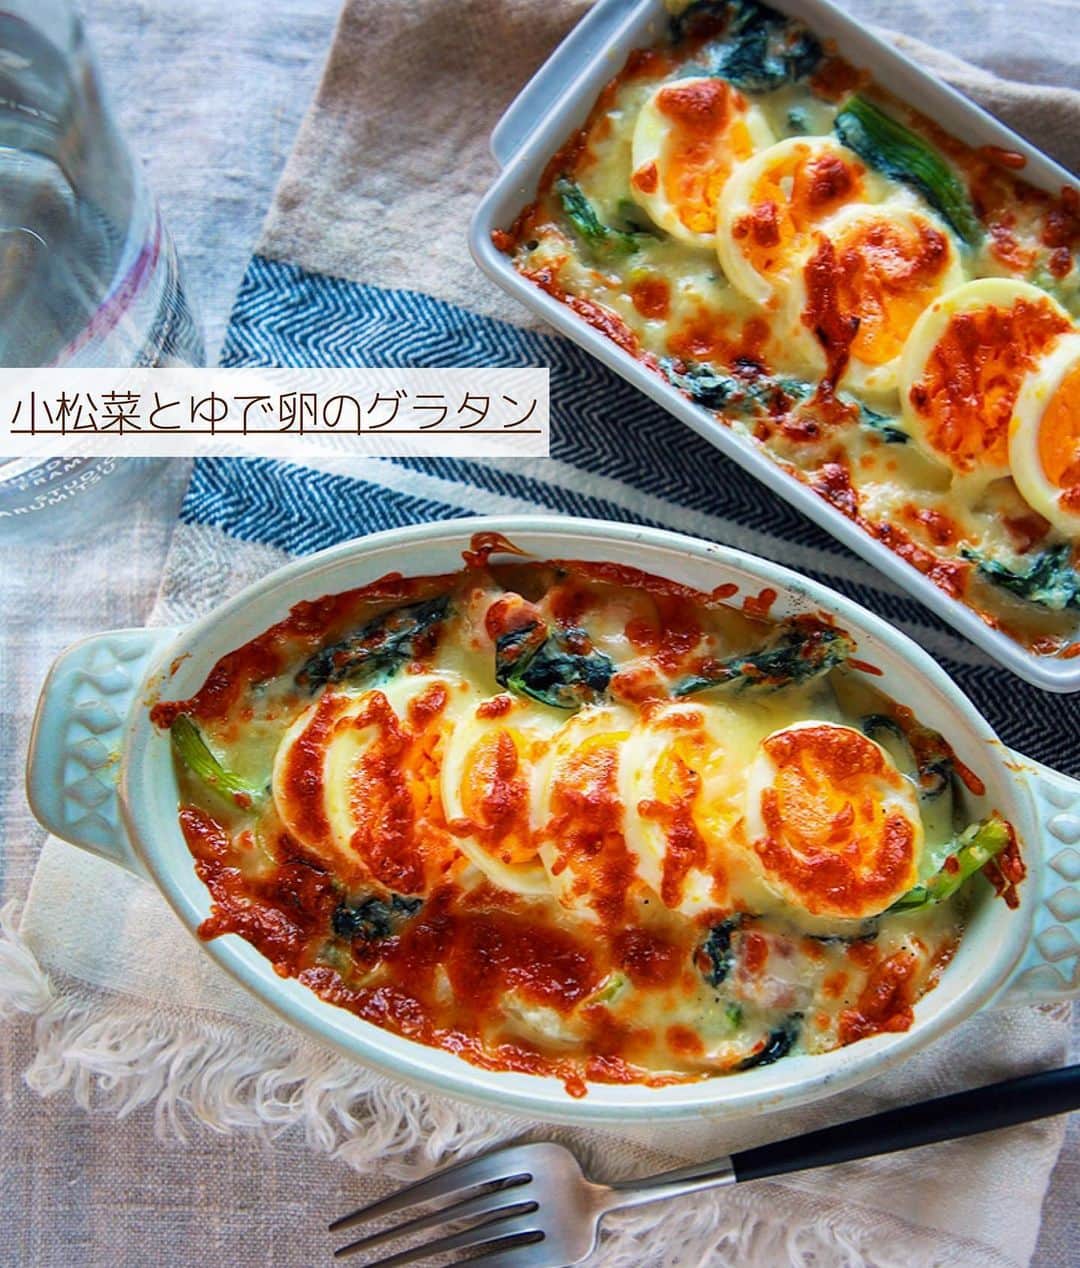 Mizuki【料理ブロガー・簡単レシピ】さんのインスタグラム写真 - (Mizuki【料理ブロガー・簡単レシピ】Instagram)「・﻿ 【#レシピ 】ーーーーーーーーー﻿ ♡小松菜とゆで卵のグラタン♡﻿ ーーーーーーーーーーーーーーー﻿ ﻿ ﻿ ﻿ おはようございます(*^^*)﻿ ﻿ 今日ご紹介させていただくのは﻿ \ 小松菜とゆで卵のグラタン /﻿ ﻿ 具沢山で食べ応え十分♡﻿ 野菜をたっぷり加えて﻿ ヘルシーに仕上げました♩﻿ 生クリーム&ホワイトソース不要の﻿ 簡単お手軽レシピです(*´艸`)﻿ ﻿ 好みでマカロニを加えたり﻿ ごはんにかけてドリアにしたりと﻿ アレンジもお試し下さいね(*^^*)﻿ ﻿ ﻿ ﻿ ＿＿＿＿＿＿＿＿＿＿＿＿＿＿＿＿＿＿＿＿﻿ 【2人分】﻿ 小松菜...1束(200g)﻿ 玉ねぎ...1/4個﻿ ベーコン...2枚﻿ ゆで卵...2個﻿ バター...10g﻿ 薄力粉...大2﻿ 牛乳...300ml﻿ ●コンソメ...小1/2﻿ ●塩こしょう...少々﻿ ピザ用チーズ...60g﻿ ﻿ 1.小松菜は4cm長さに切る。玉ねぎは薄切りにする。ベーコンは1cm幅に切る。﻿ 2.フライパンにバターを中火で熱して1を炒める。野菜がしんなりしたら薄力粉を加え、弱めの中火で1分炒める。﻿ 3.牛乳を3回に分けて加え、その都度よく混ぜる。●を加えて混ぜて溶かし、とろみが付くまで煮る。﻿ 4.耐熱皿に入れ、スライスしたゆで卵とチーズをのせ、トースターで焼き色が付くまで焼く。﻿ ￣￣￣￣￣￣￣￣￣￣￣￣￣￣￣￣￣￣￣￣﻿ ﻿ ﻿ ﻿ ﻿ 《ポイント》﻿ ♦︎マカロニを加える場合は別茹でし、牛乳の後に加えて下さい♩﻿ ♦︎薄力粉を加えたら火加減を落とし、1分間しっかり炒めてから牛乳を加えて下さい♩﻿ ♦︎生クリームを加える場合は牛乳の一部(100mlくらい)を置き換えると◎﻿ ﻿ ﻿ ﻿ ﻿ ﻿ ﻿ ﻿ 📕新刊発売中📕﻿ 【ラクしておいしい！#1品晩ごはん 】﻿ ￣￣￣￣￣￣￣￣￣￣￣￣￣￣￣￣￣﻿ 私たちだってヘトヘトな日がある•••﻿ 毎日何品も作っていられない•••﻿ もうごはんに悩みたくない😢﻿ そんな時、1品ごはんはいかがでしょう？﻿ というご提案です✨﻿ ﻿ 【1品ごはん】は﻿ 副菜いらずで全てがシンプル！﻿ ￣￣￣￣￣￣￣￣￣￣￣￣￣￣￣￣￣￣﻿ 一品つくるだけでいいから﻿ 献立を考えなくてよし！﻿ ￣￣￣￣￣￣￣￣￣￣￣￣￣￣￣￣￣￣﻿ 悩まない、疲れない、﻿ 気力や時間がなくてもなんとかなる！﻿ ￣￣￣￣￣￣￣￣￣￣￣￣￣￣￣￣￣￣﻿ そんな頼りになる﻿ 便利なお助けごはんです☺️💕﻿ (ハイライトに🔗貼っています✨)﻿ ￣￣￣￣￣￣￣￣￣￣￣￣￣￣￣￣￣﻿ ﻿ ﻿ ﻿ ﻿ ﻿ ⭐️発売中⭐️﻿ ＿＿＿＿＿＿＿＿＿＿＿＿＿＿＿＿＿＿﻿ しんどくない献立、考えました♩﻿ \15分でいただきます/﻿ 📕#Mizukiの2品献立 📕﻿ ﻿ 和食をもっとカジュアルに♩﻿ \毎日のごはんがラクになる/﻿ 📘#Mizukiの今どき和食 📘﻿ ﻿ ホケミレシピの決定版♩﻿ \はじめてでも失敗しない/﻿ 📙#ホットケーキミックスのお菓子 📙﻿ ﻿ NHKまる得マガジンテキスト☆﻿ ホットケーキミックスで﻿ 📗絶品おやつ&意外なランチ📗﻿ ￣￣￣￣￣￣￣￣￣￣￣￣￣￣￣￣￣￣﻿ ﻿ ﻿ ﻿ ＿＿＿＿＿＿＿＿＿＿＿＿＿＿＿＿＿＿﻿ レシピを作って下さった際や﻿ レシピ本についてのご投稿には﻿ タグ付け( @mizuki_31cafe )して﻿ お知らせいただけると嬉しいです😊💕﻿ ￣￣￣￣￣￣￣￣￣￣￣￣￣￣￣￣￣￣﻿ ﻿ ﻿ ﻿ ﻿ #グラタン#小松菜#ゆで卵#生クリームなし#Mizuki#簡単レシピ#時短レシピ#節約レシピ#料理#フーディーテーブル#マカロニメイト#おうちごはん#デリスタグラマー#料理好きな人と繋がりたい#おうちごはんlover#写真好きな人と繋がりたい#foodpic#cooking#recipe#lin_stagrammer#foodporn#yummy#f52grams#小松菜とゆで卵のグラタンm」1月11日 10時43分 - mizuki_31cafe